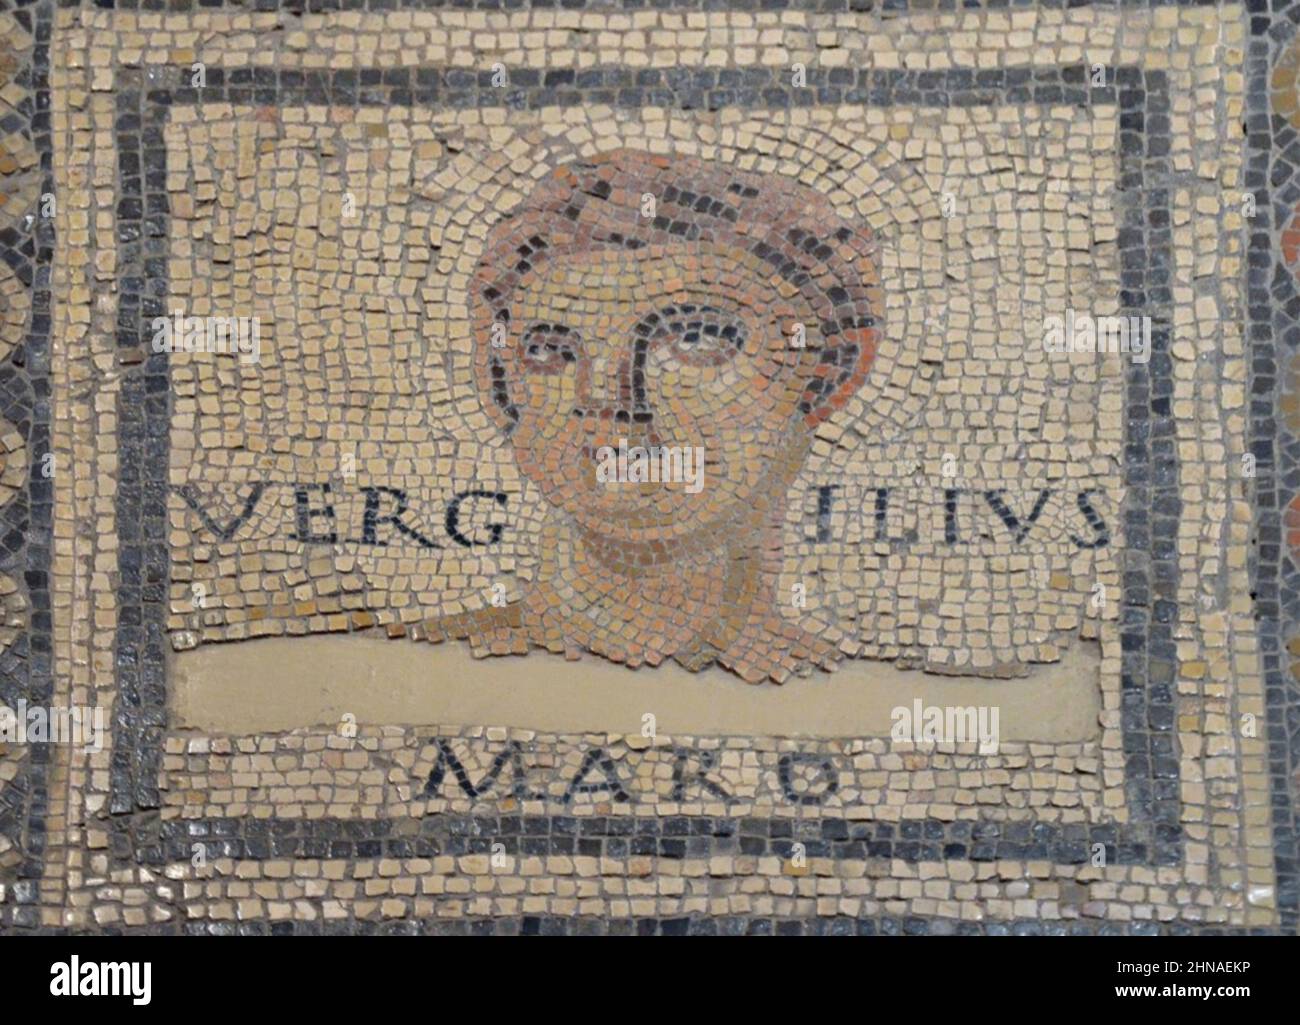 VIRGIL (c 70-21 v. Chr.) Römischer Dichter auf dem Monnus-Mosaik bei Augusta Treverorum in Trier, datiert zum Ende des 3rd. Jahrhunderts n. Chr. Stockfoto